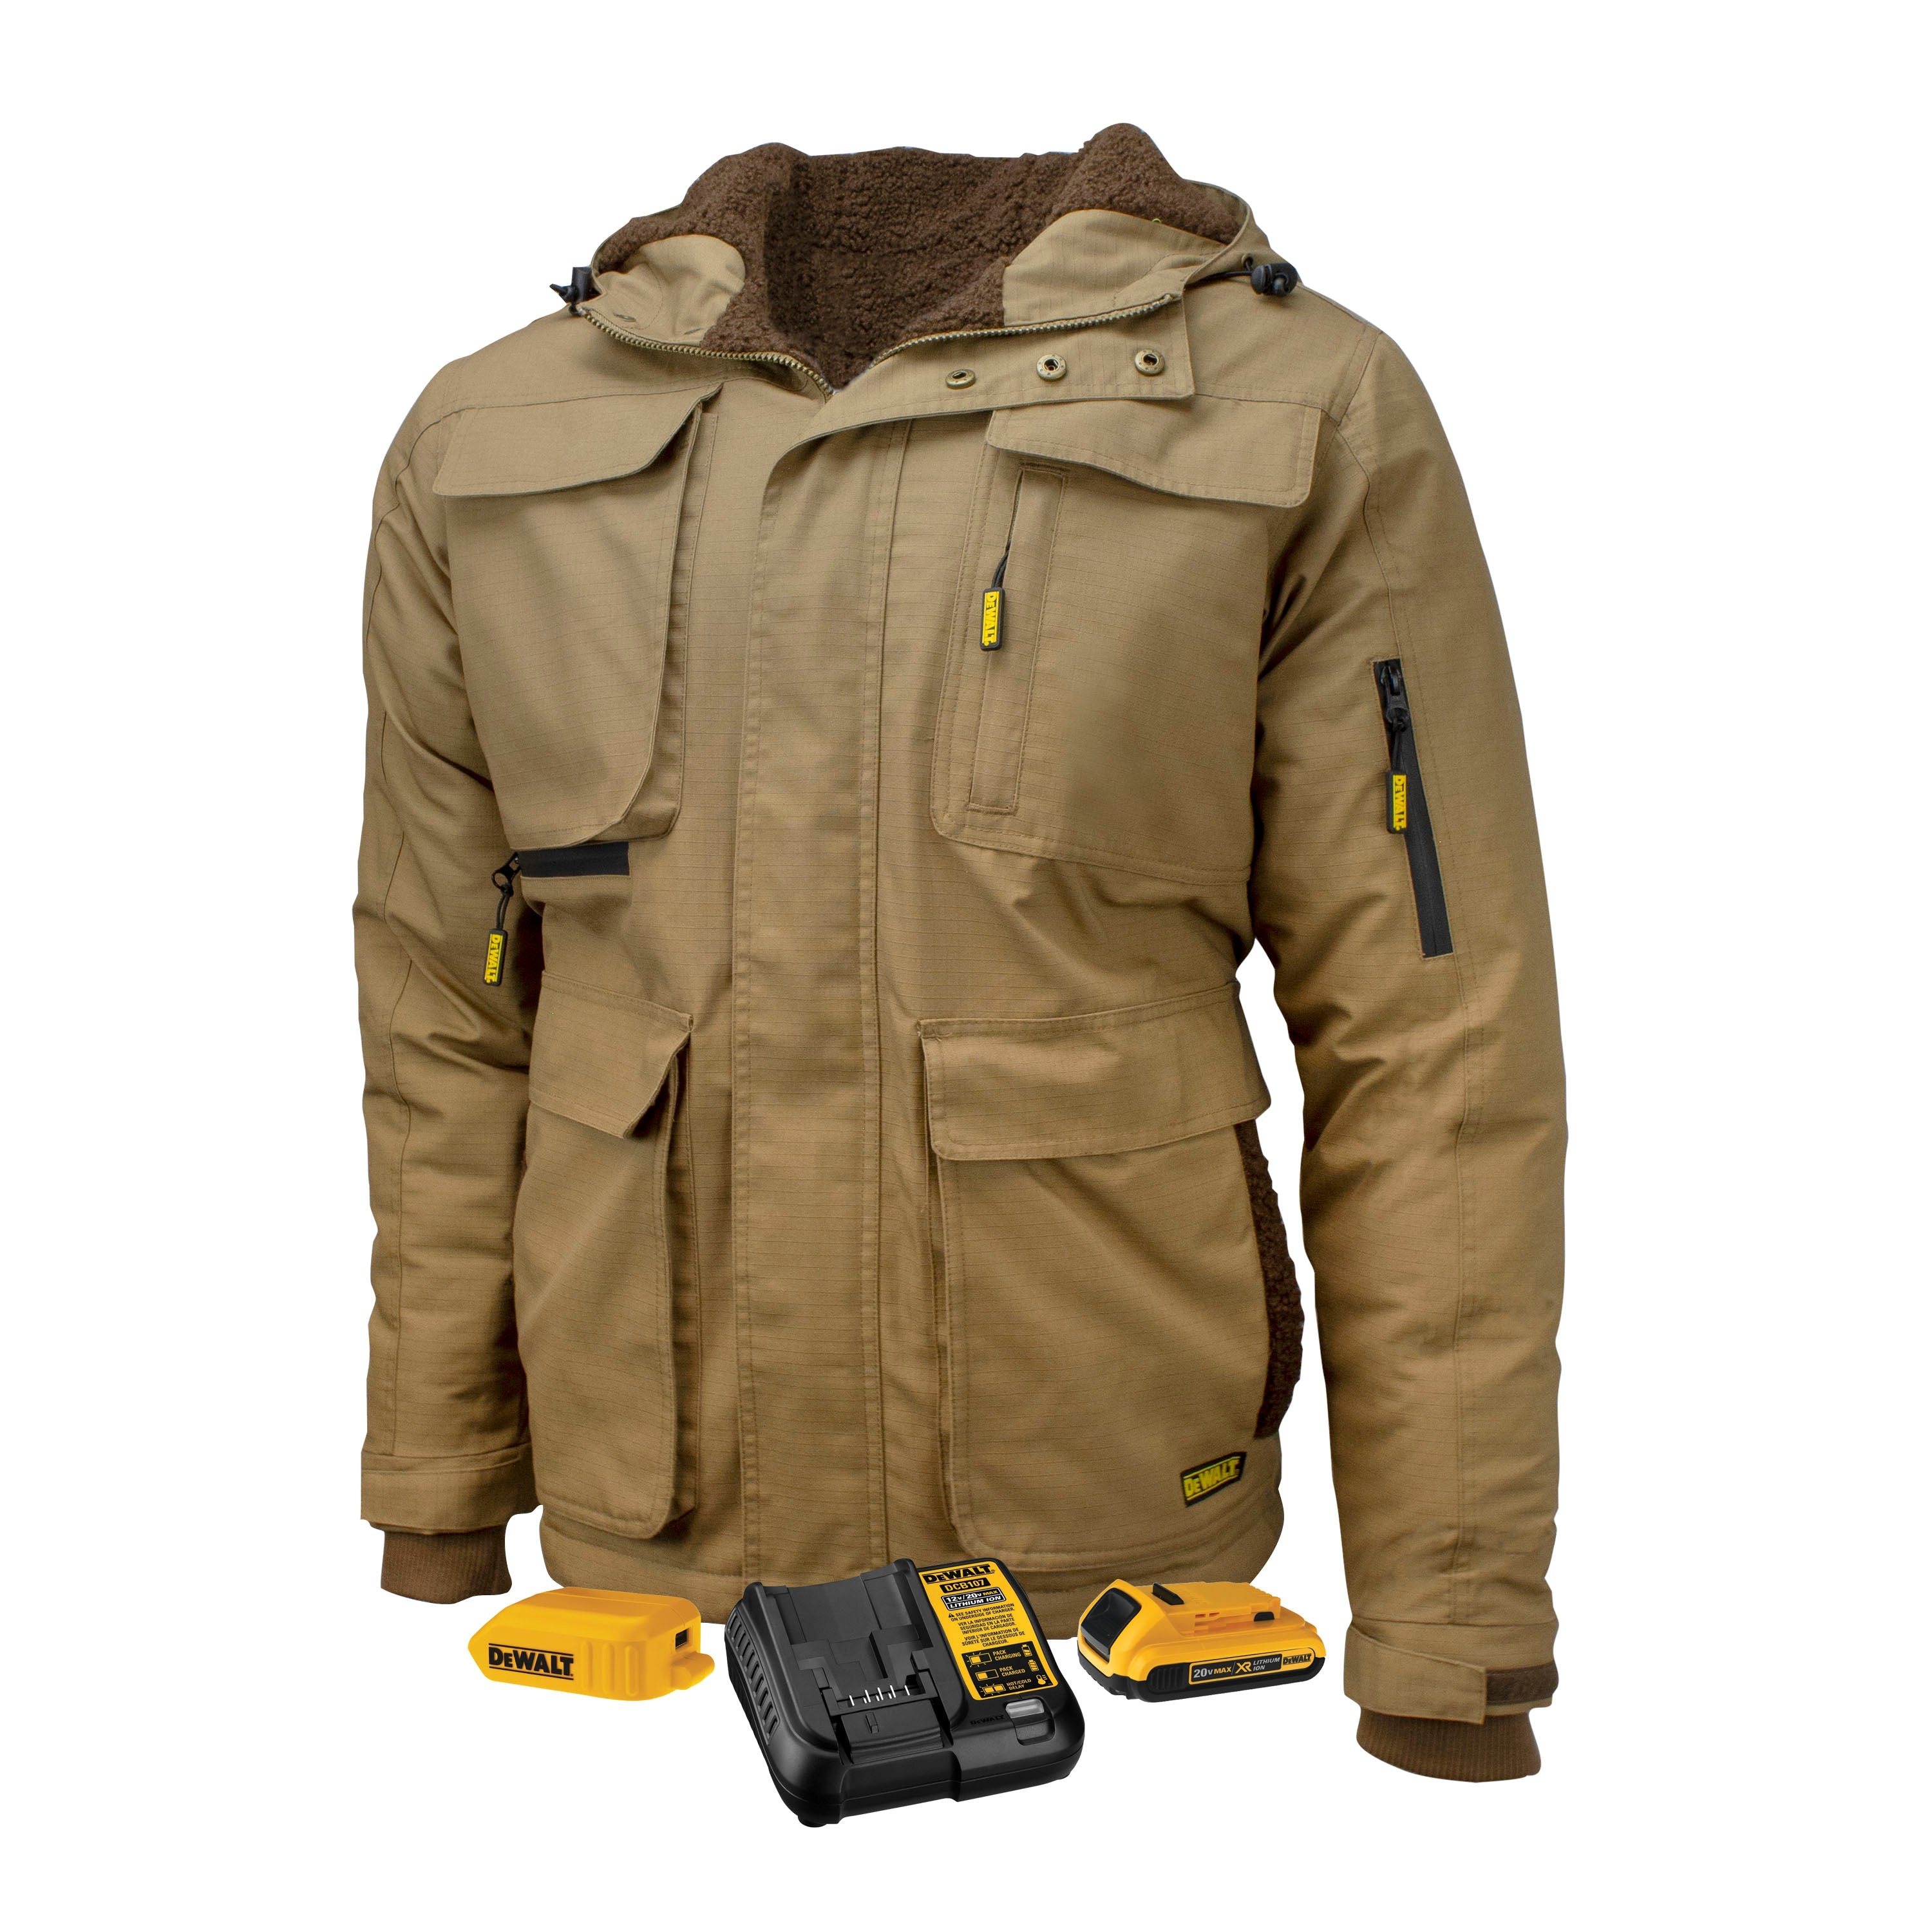 DEWALT Men's Heavy Duty Ripstop Heated Jacket Kitted